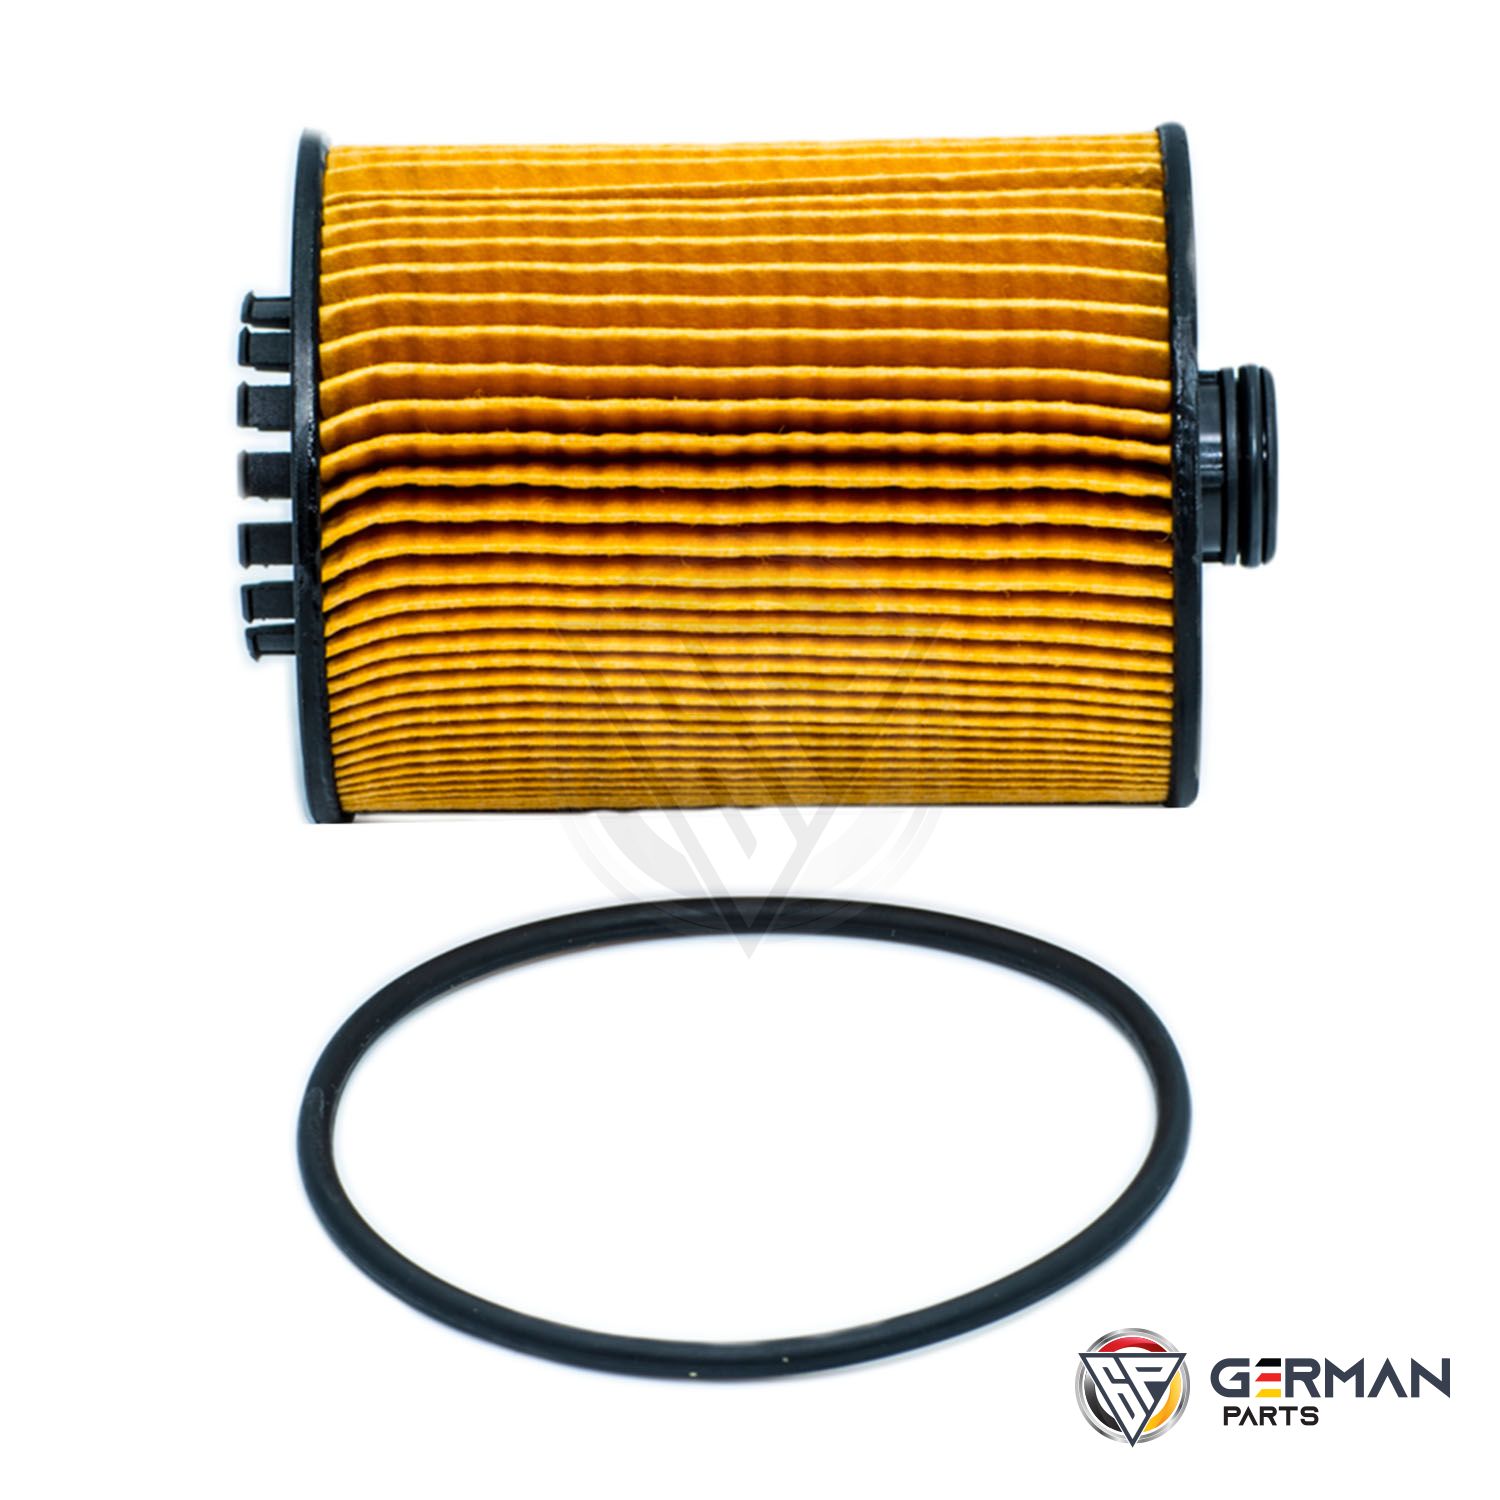 Buy Audi Volkswagen Oil Filter 03H115562 - German Parts